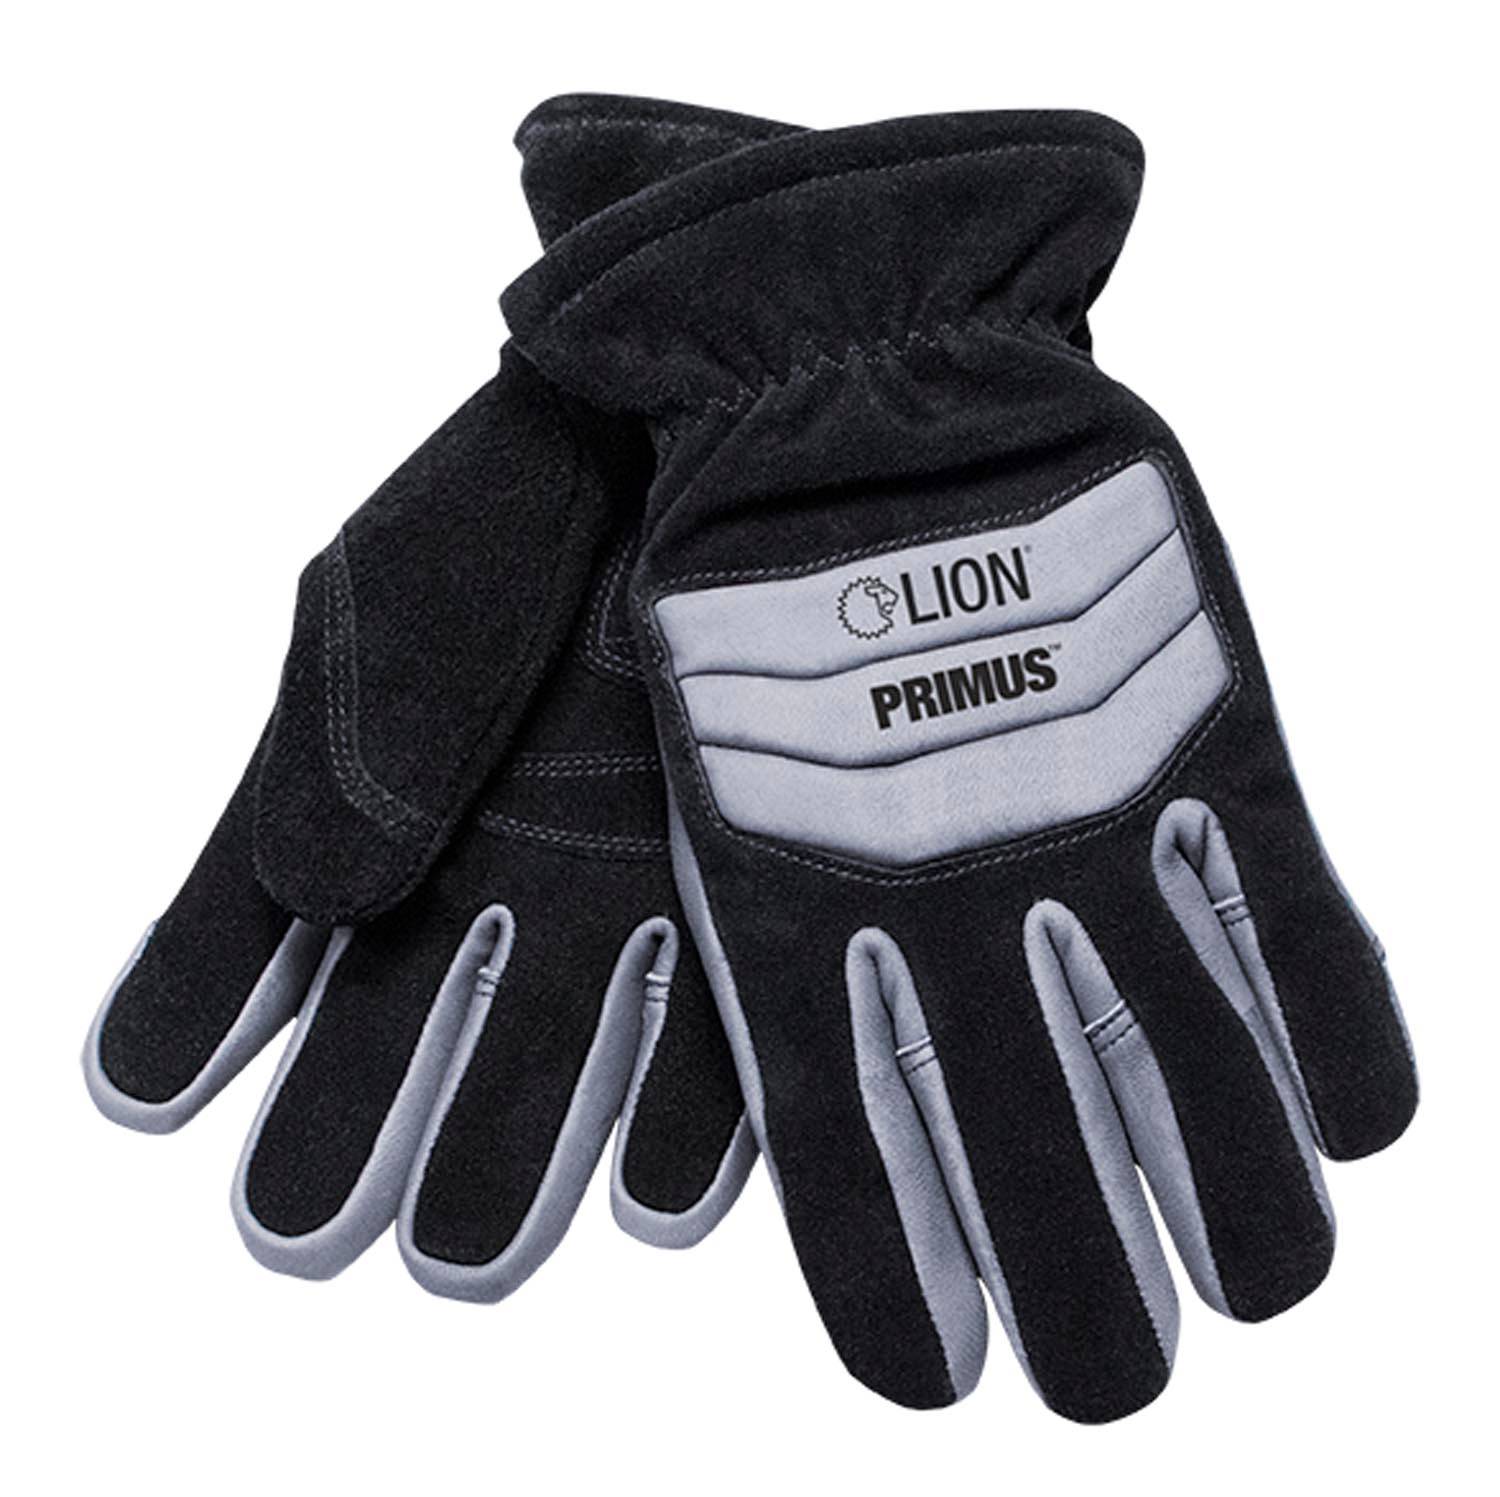 LION Primus Cadet Structural Gauntlet Fire Gloves